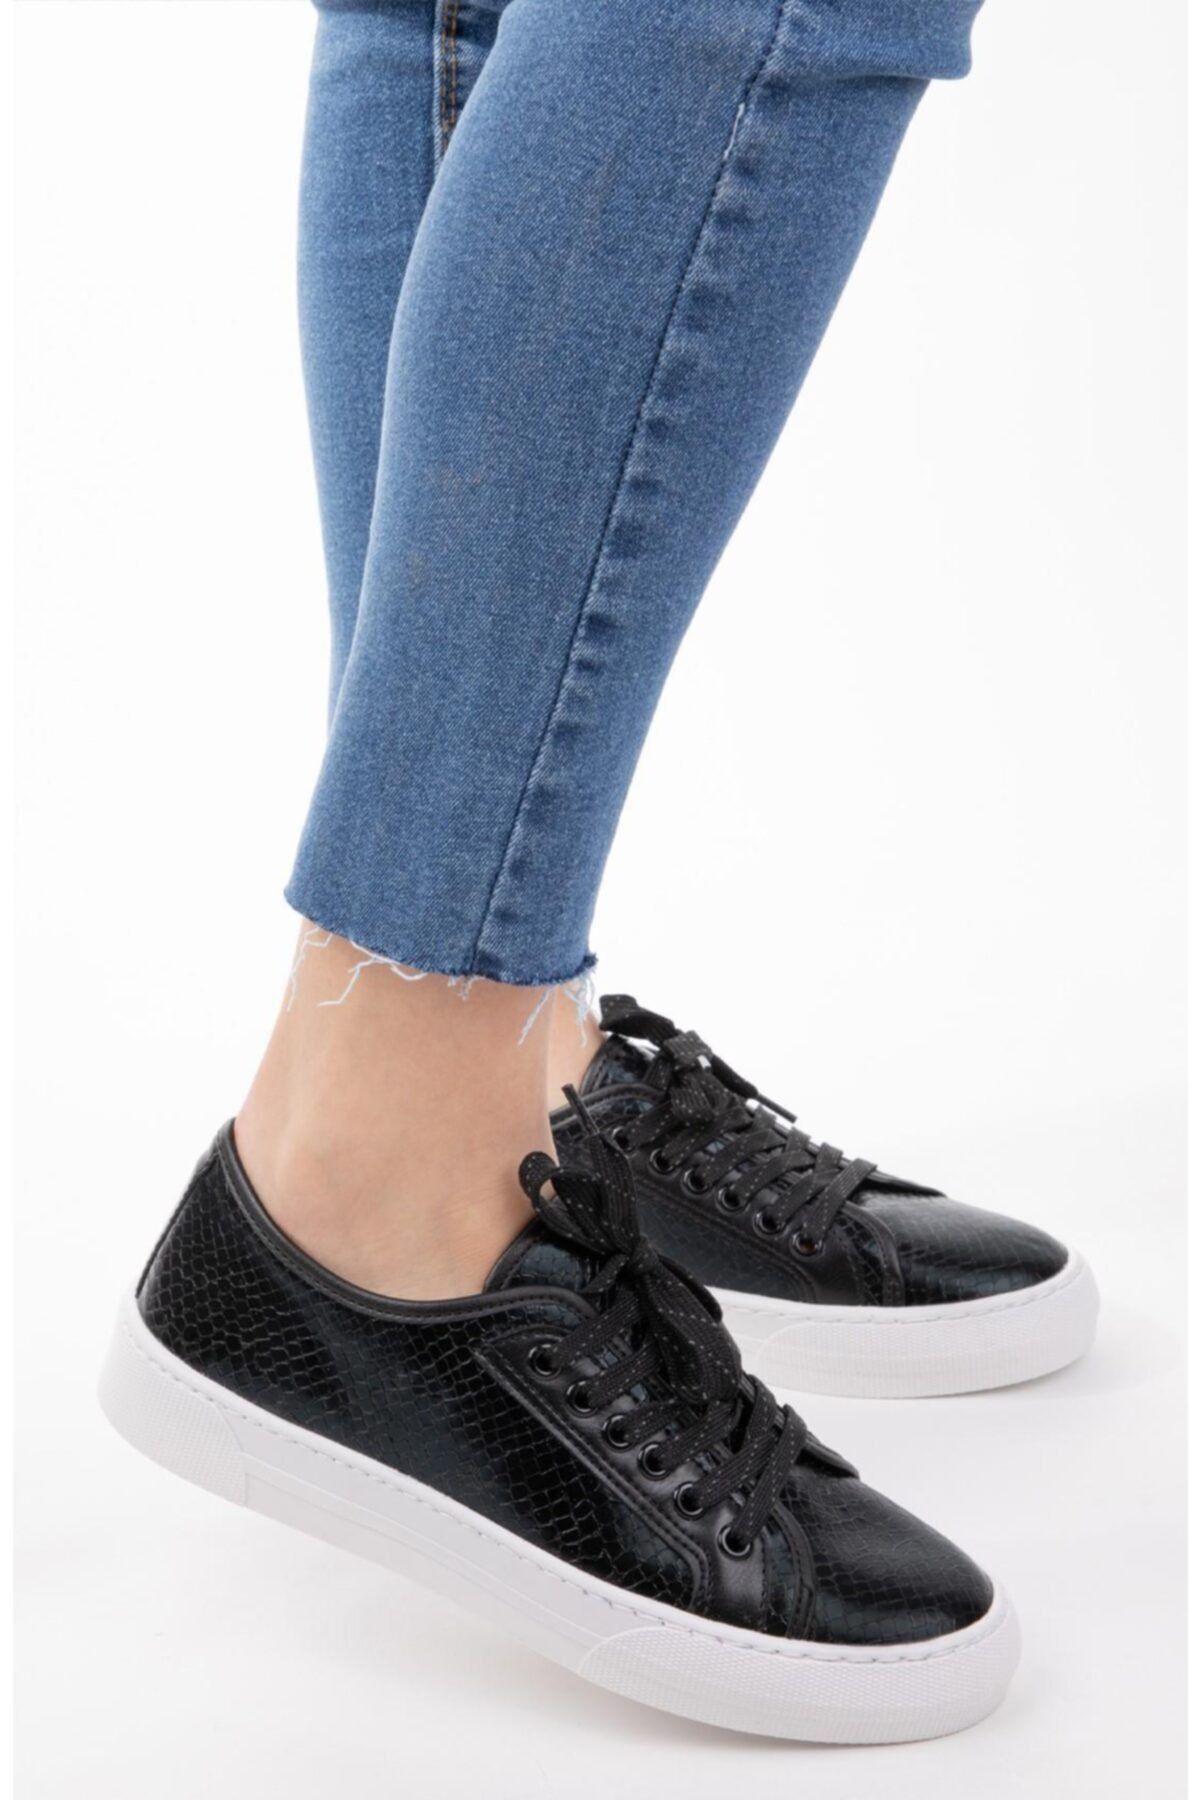 NAVYSIDE Kadın Siyah Kroko Desenli Sneaker Bağcıklı Günlük Spor Ayakkabı